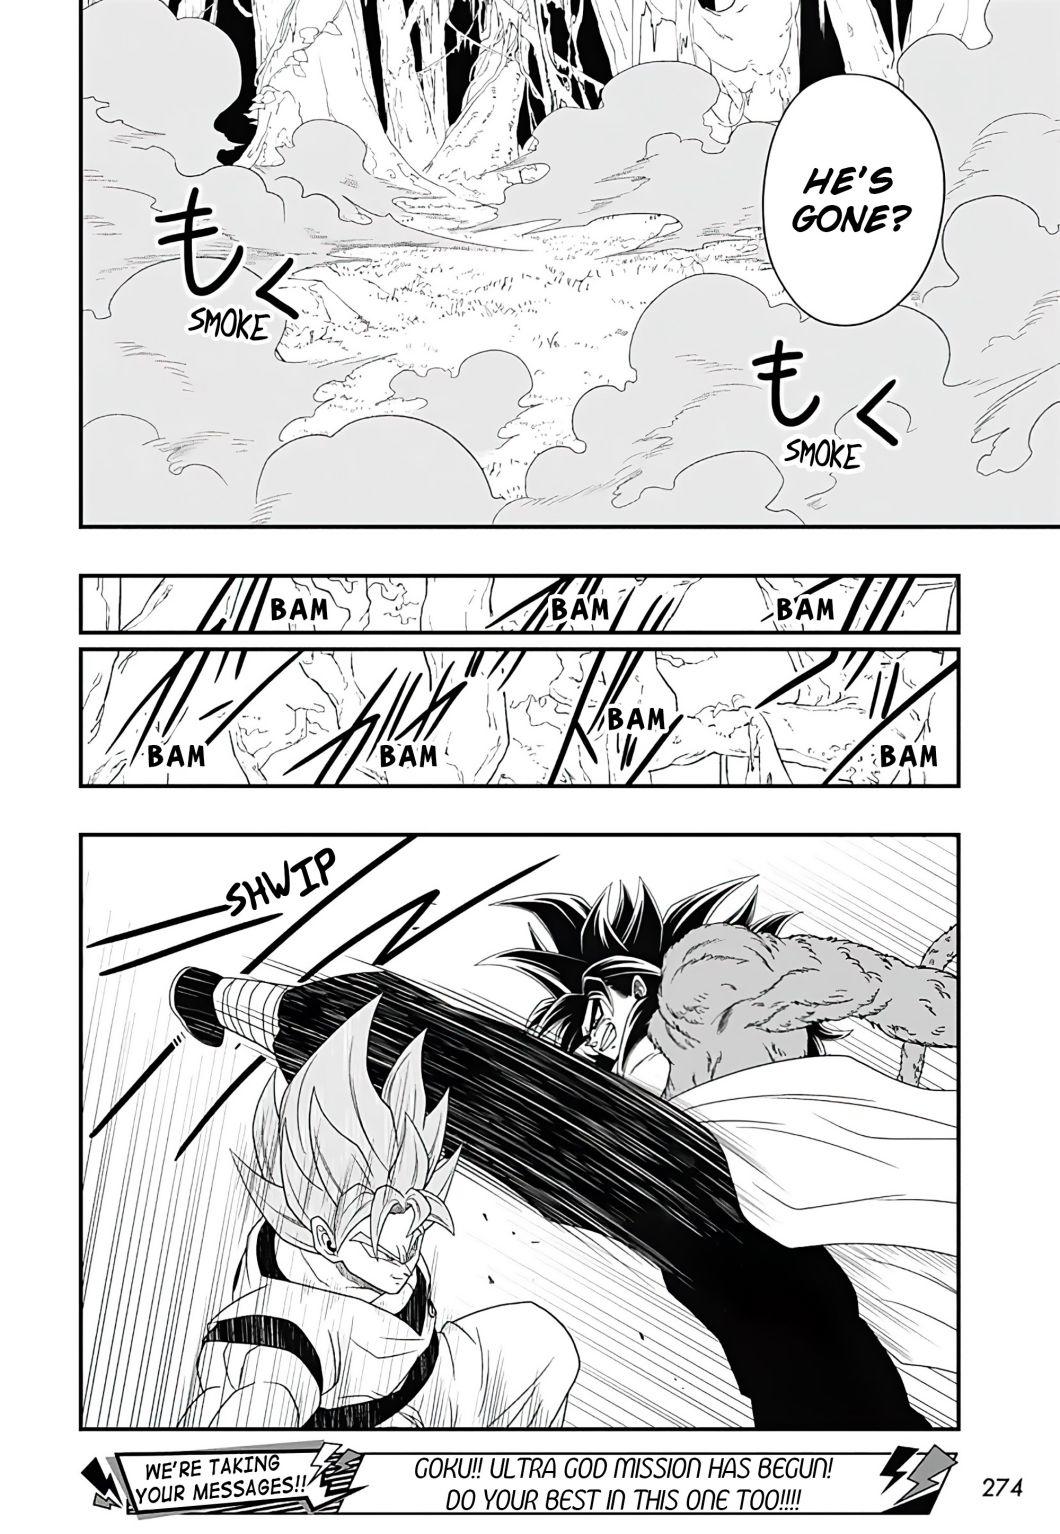 Goku vs Xeno Goku: Veja como foi a luta no manga  3c6ee406d18d159ebe6adf1d005823f3